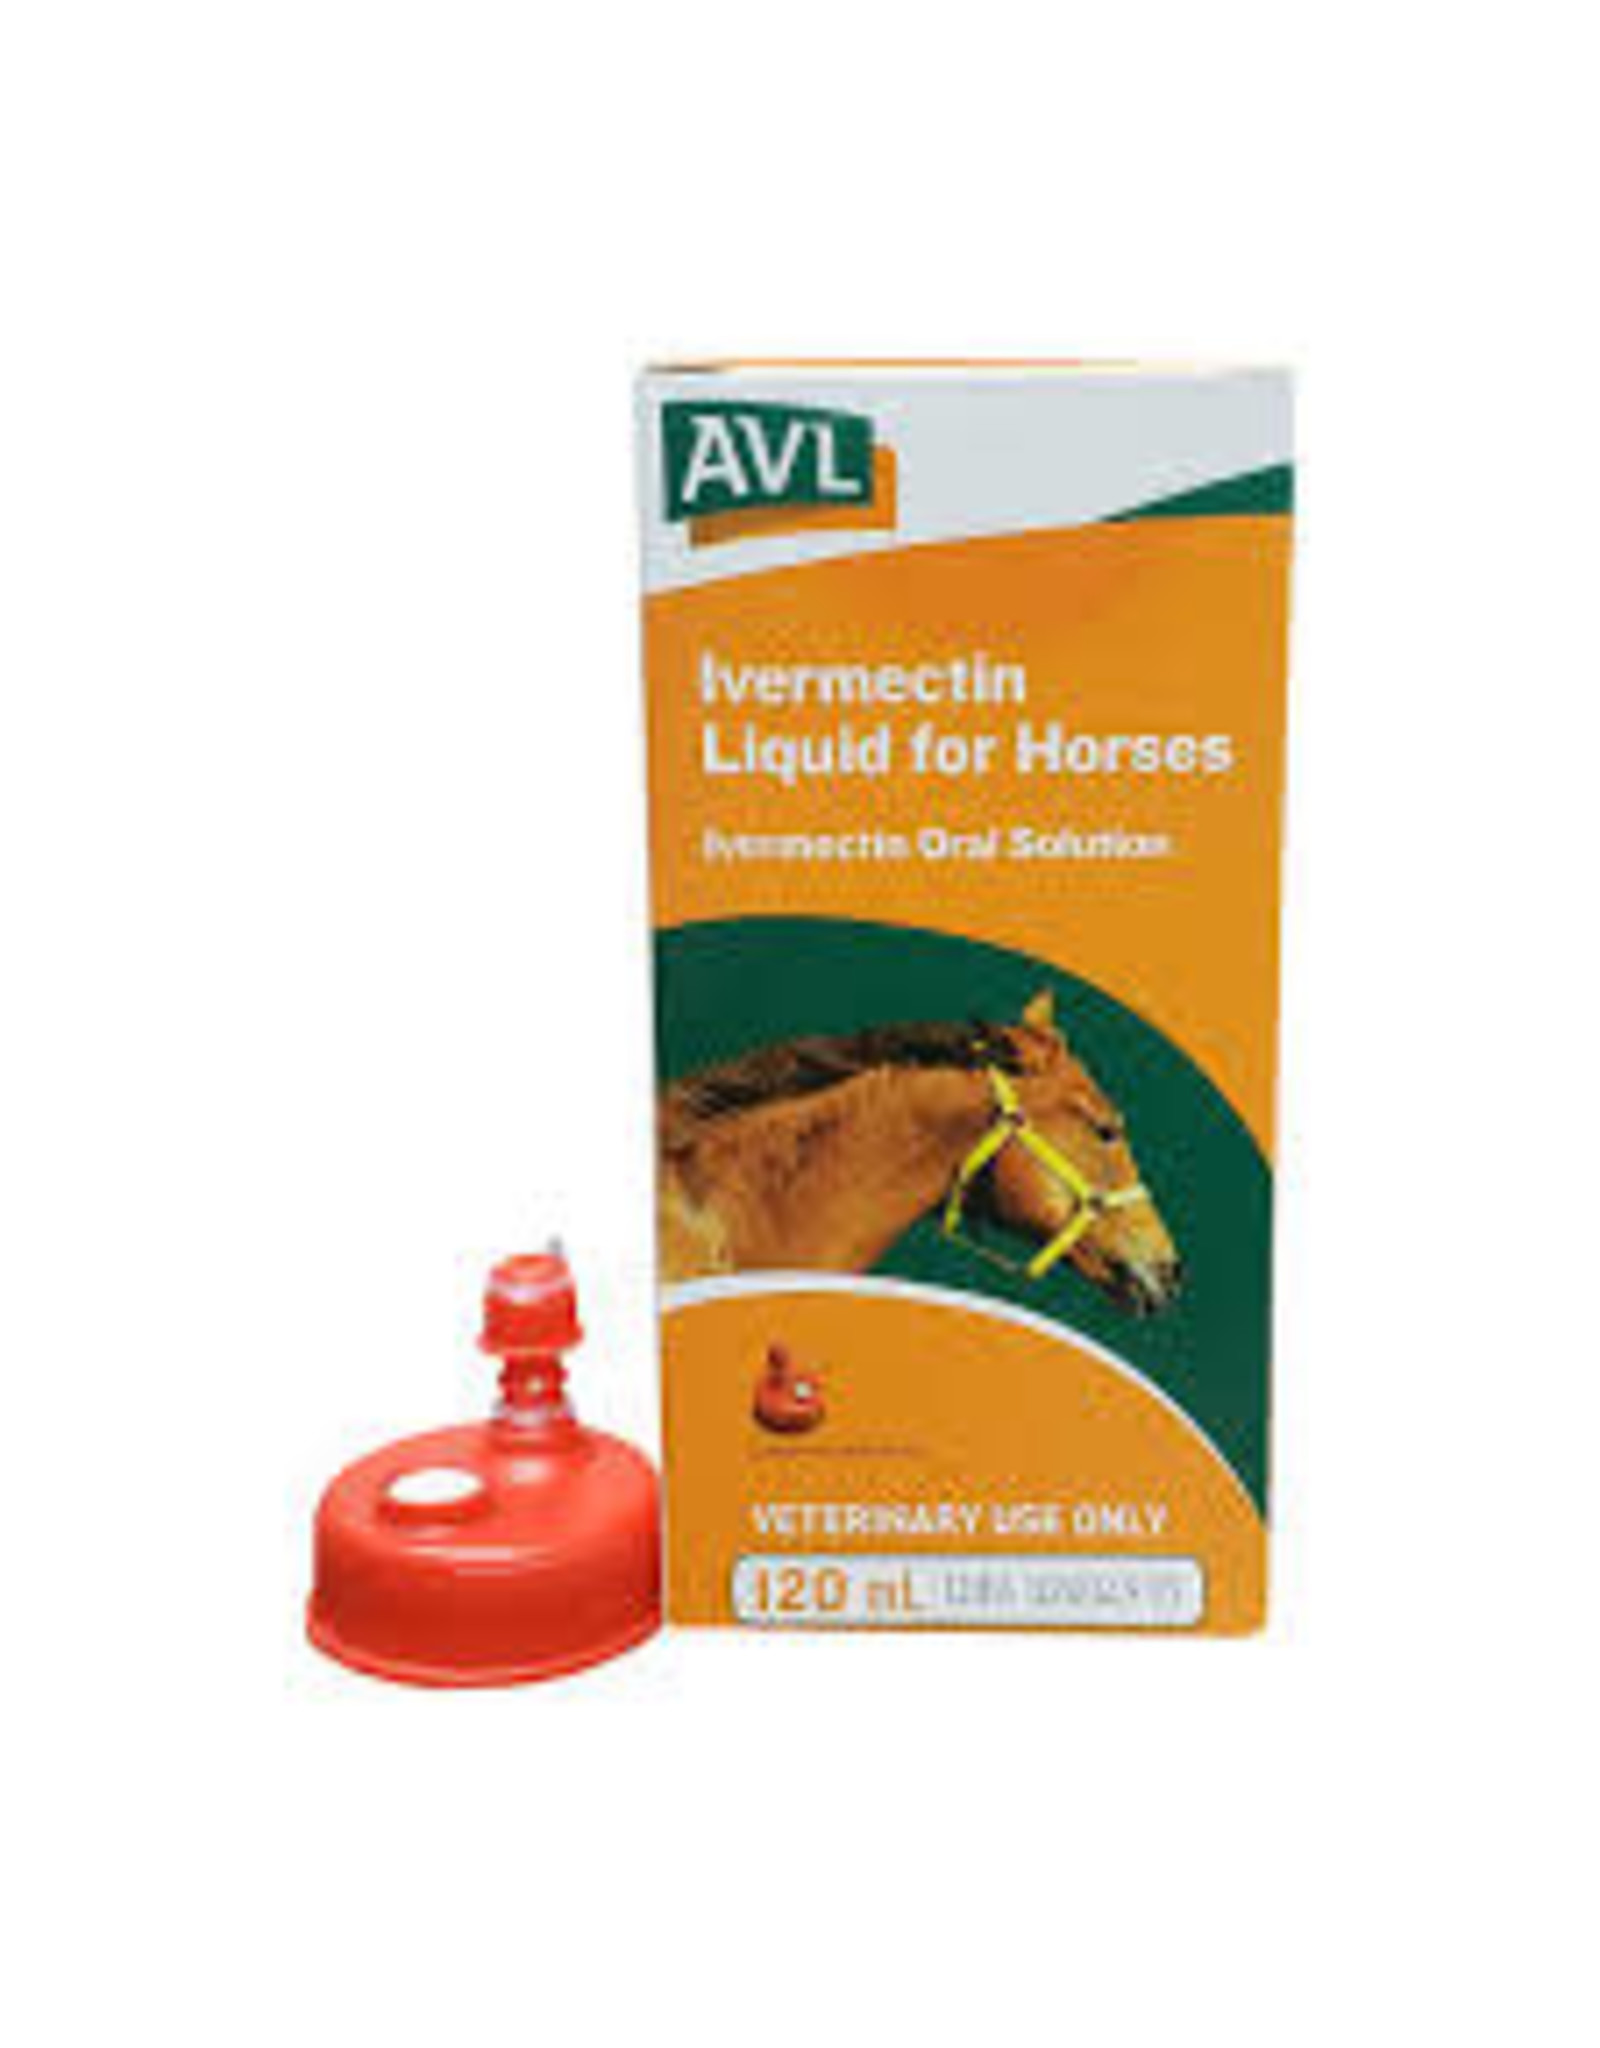 AVL AVL IVERMECTIN LIQUID FOR HORSES 120 ML 1021-017